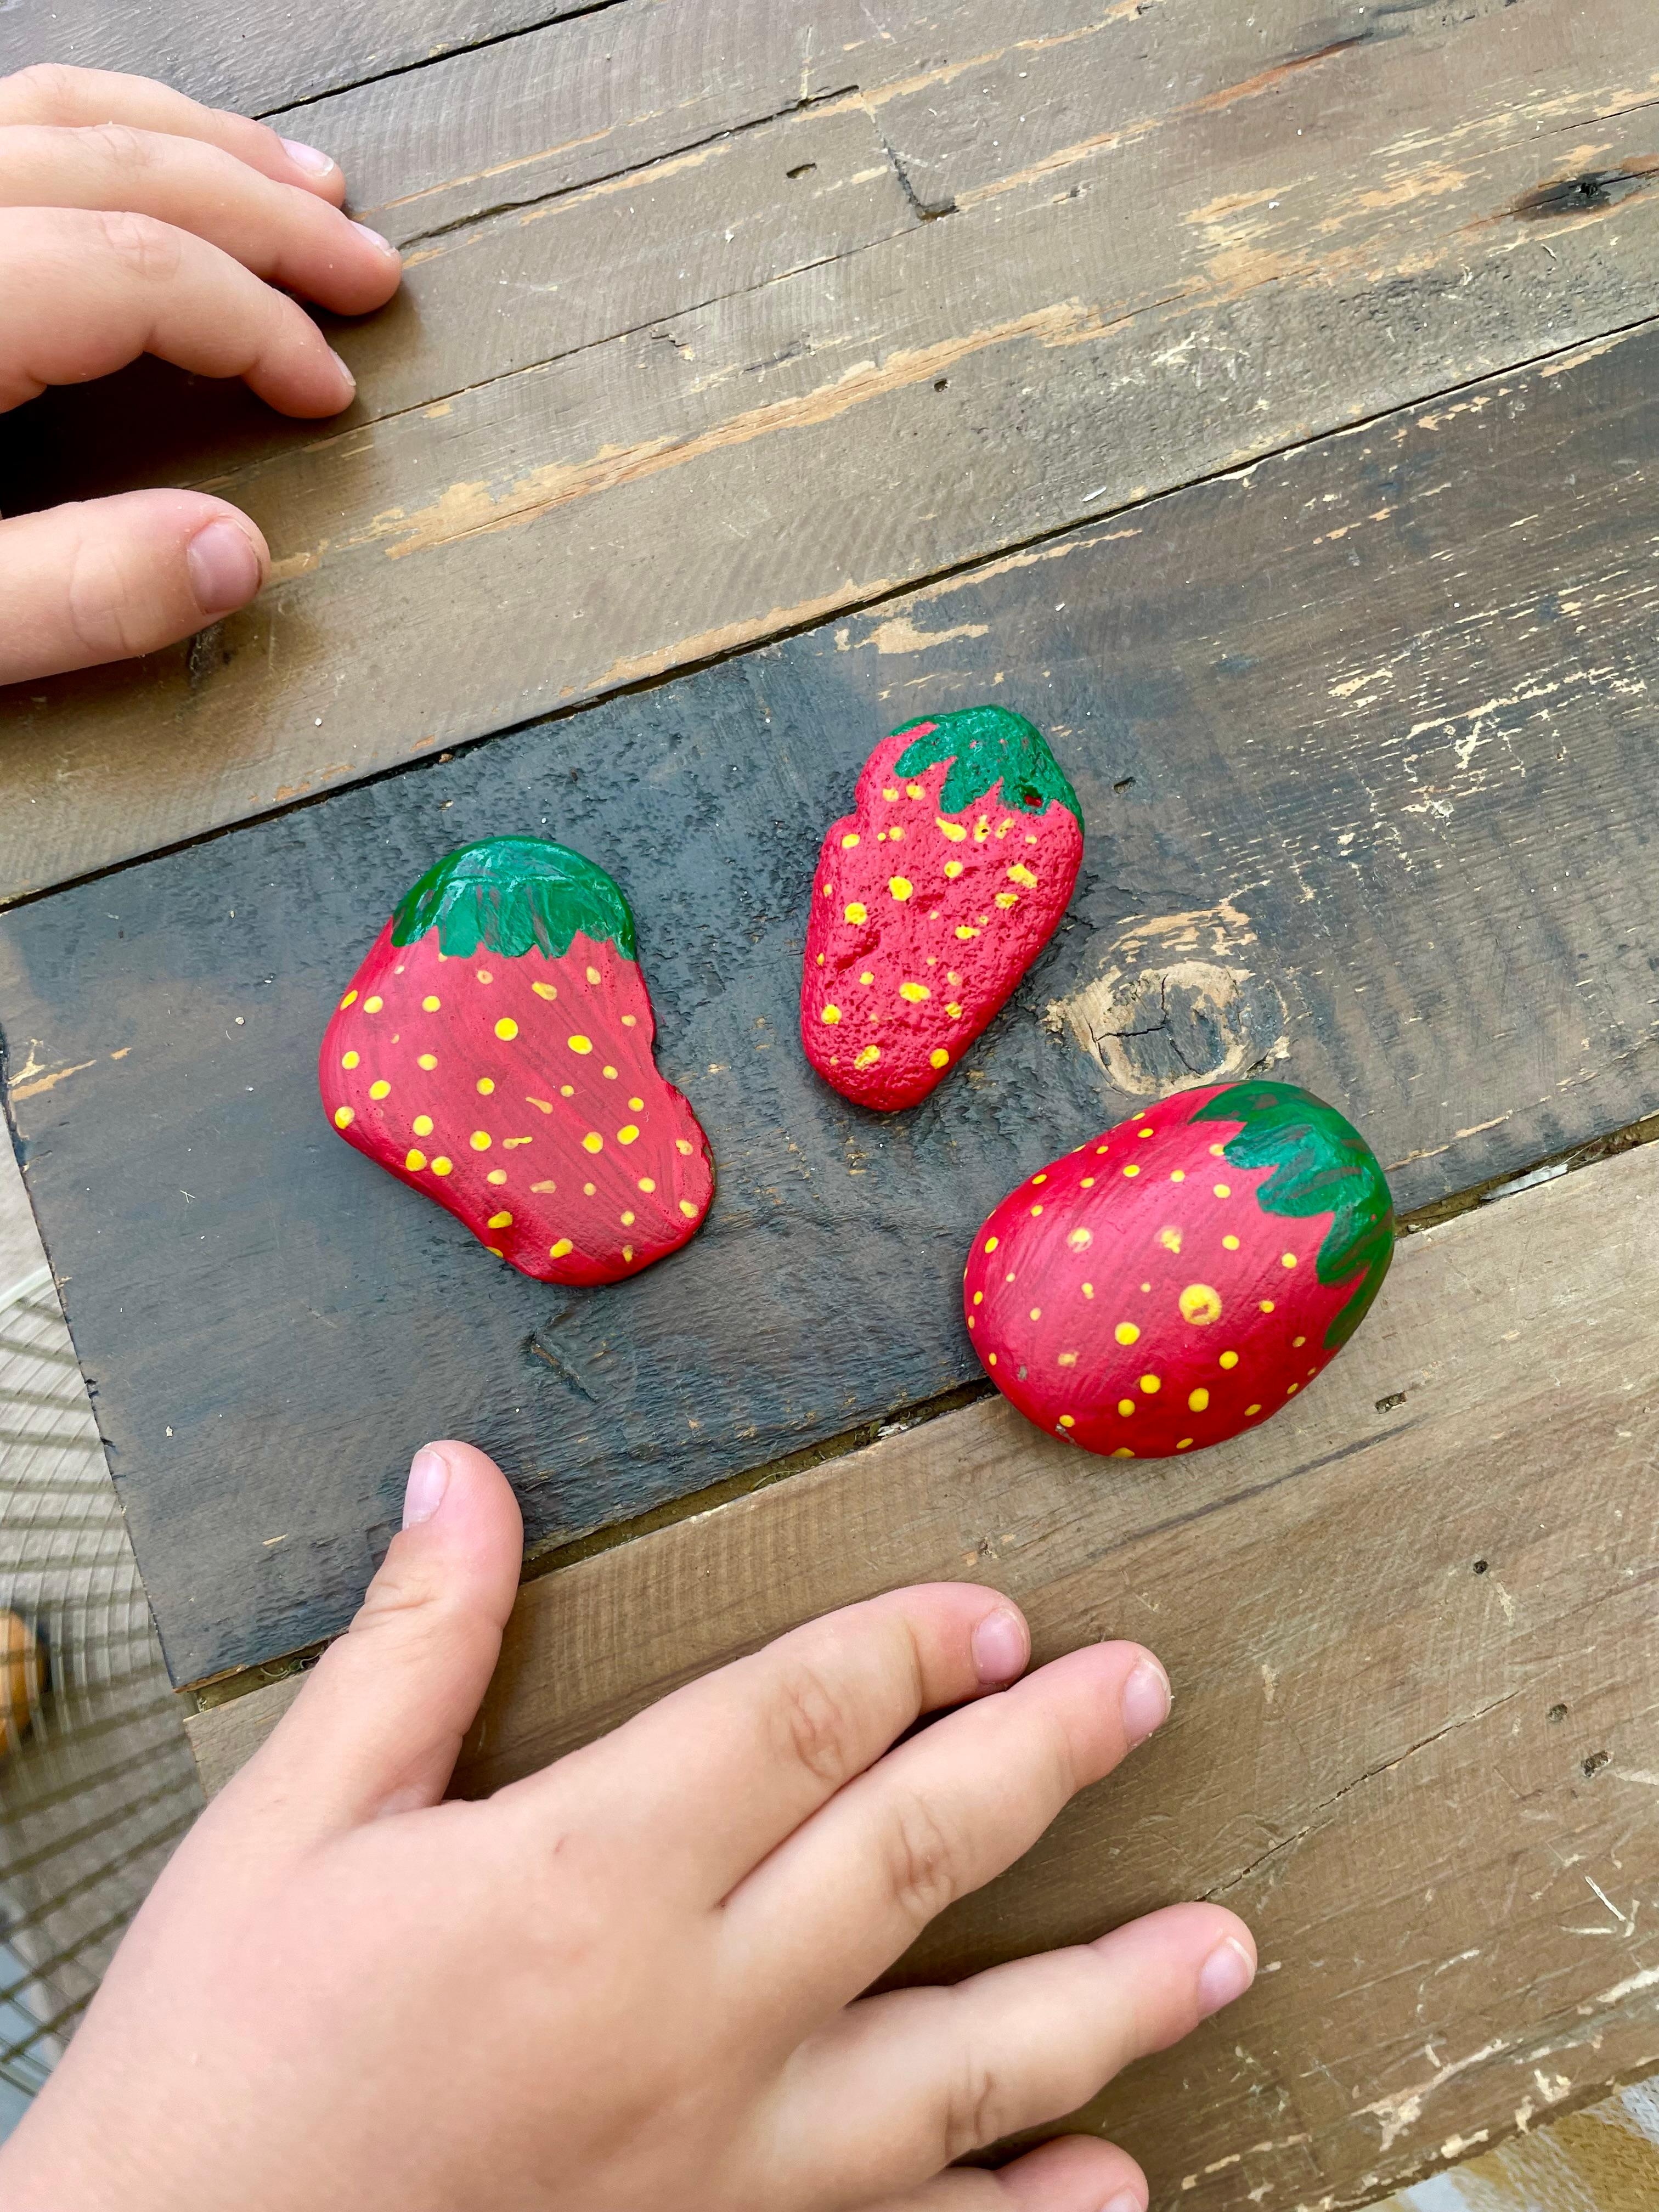 Wir haben heute #erdbeer #steine im Beet ausgelegt um die #elstern auszutricksen. Natürlich selbst #gemalt #diy #garten #couchliebt #rockart 🍓